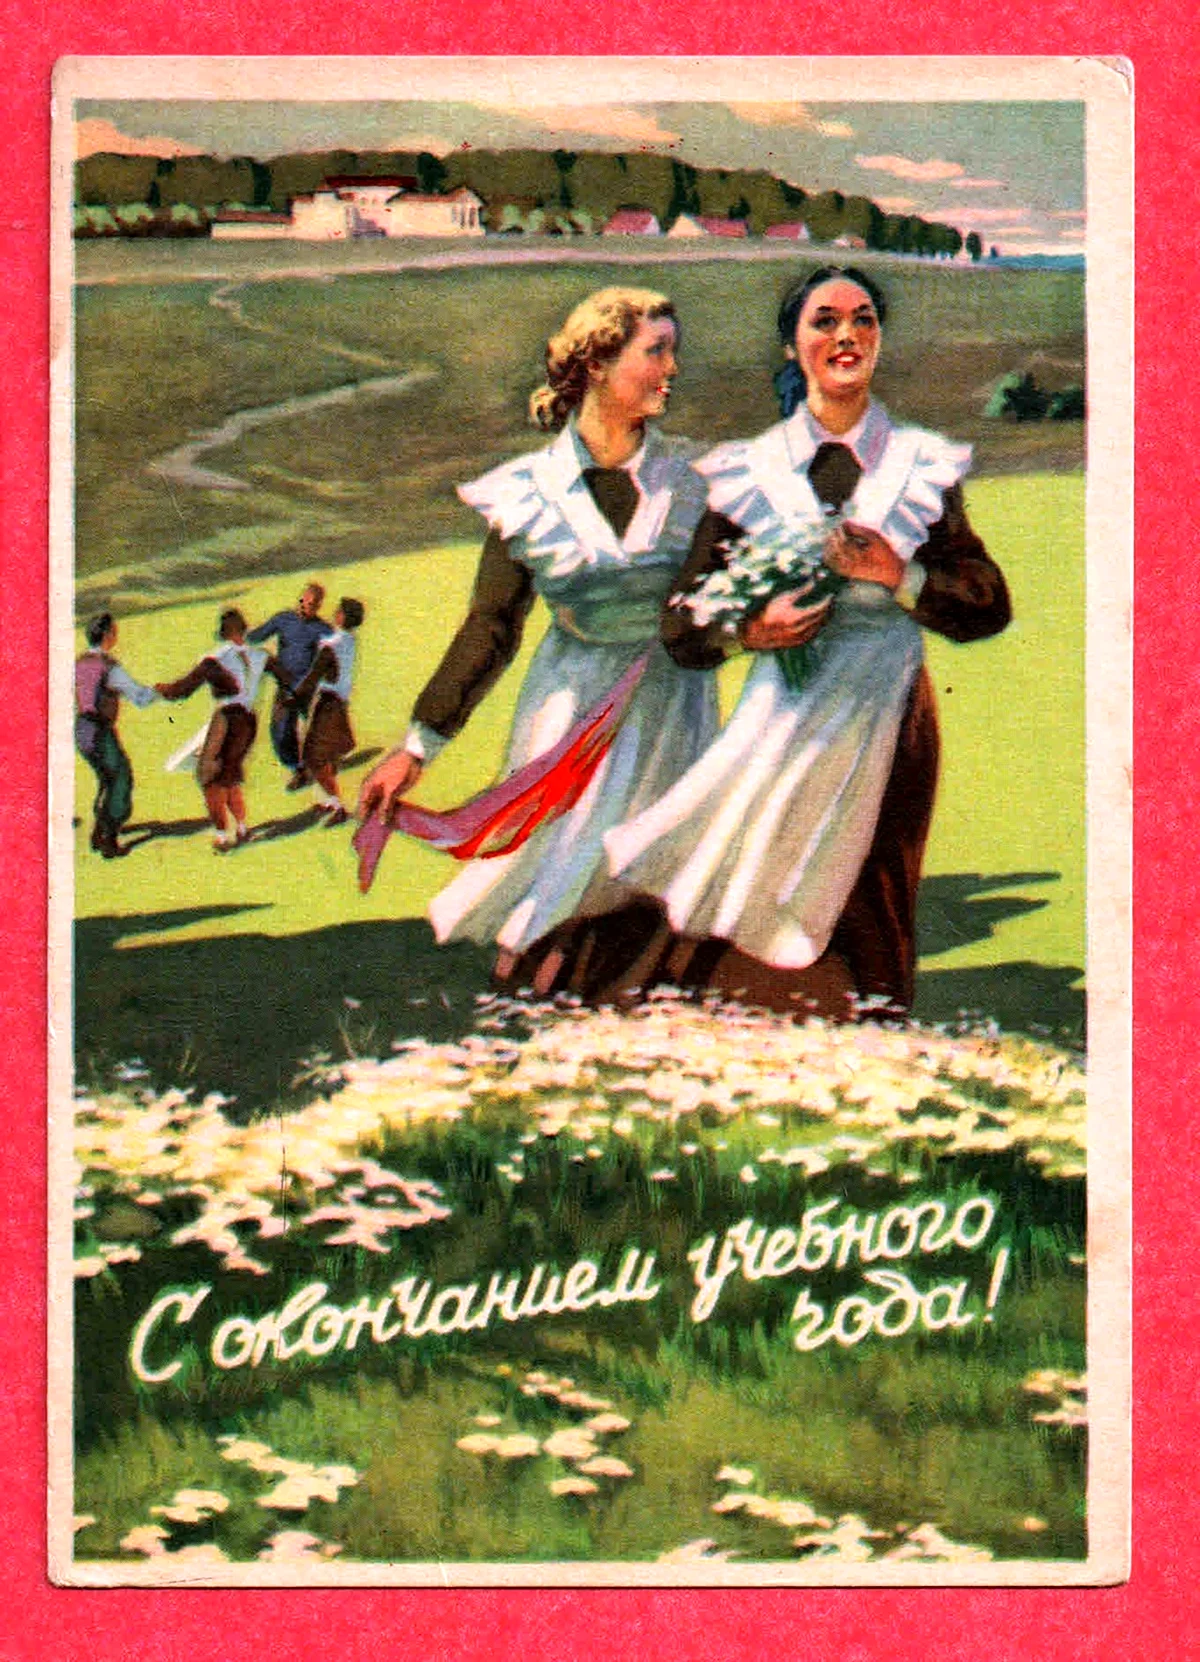 Последний звонок открытки советские